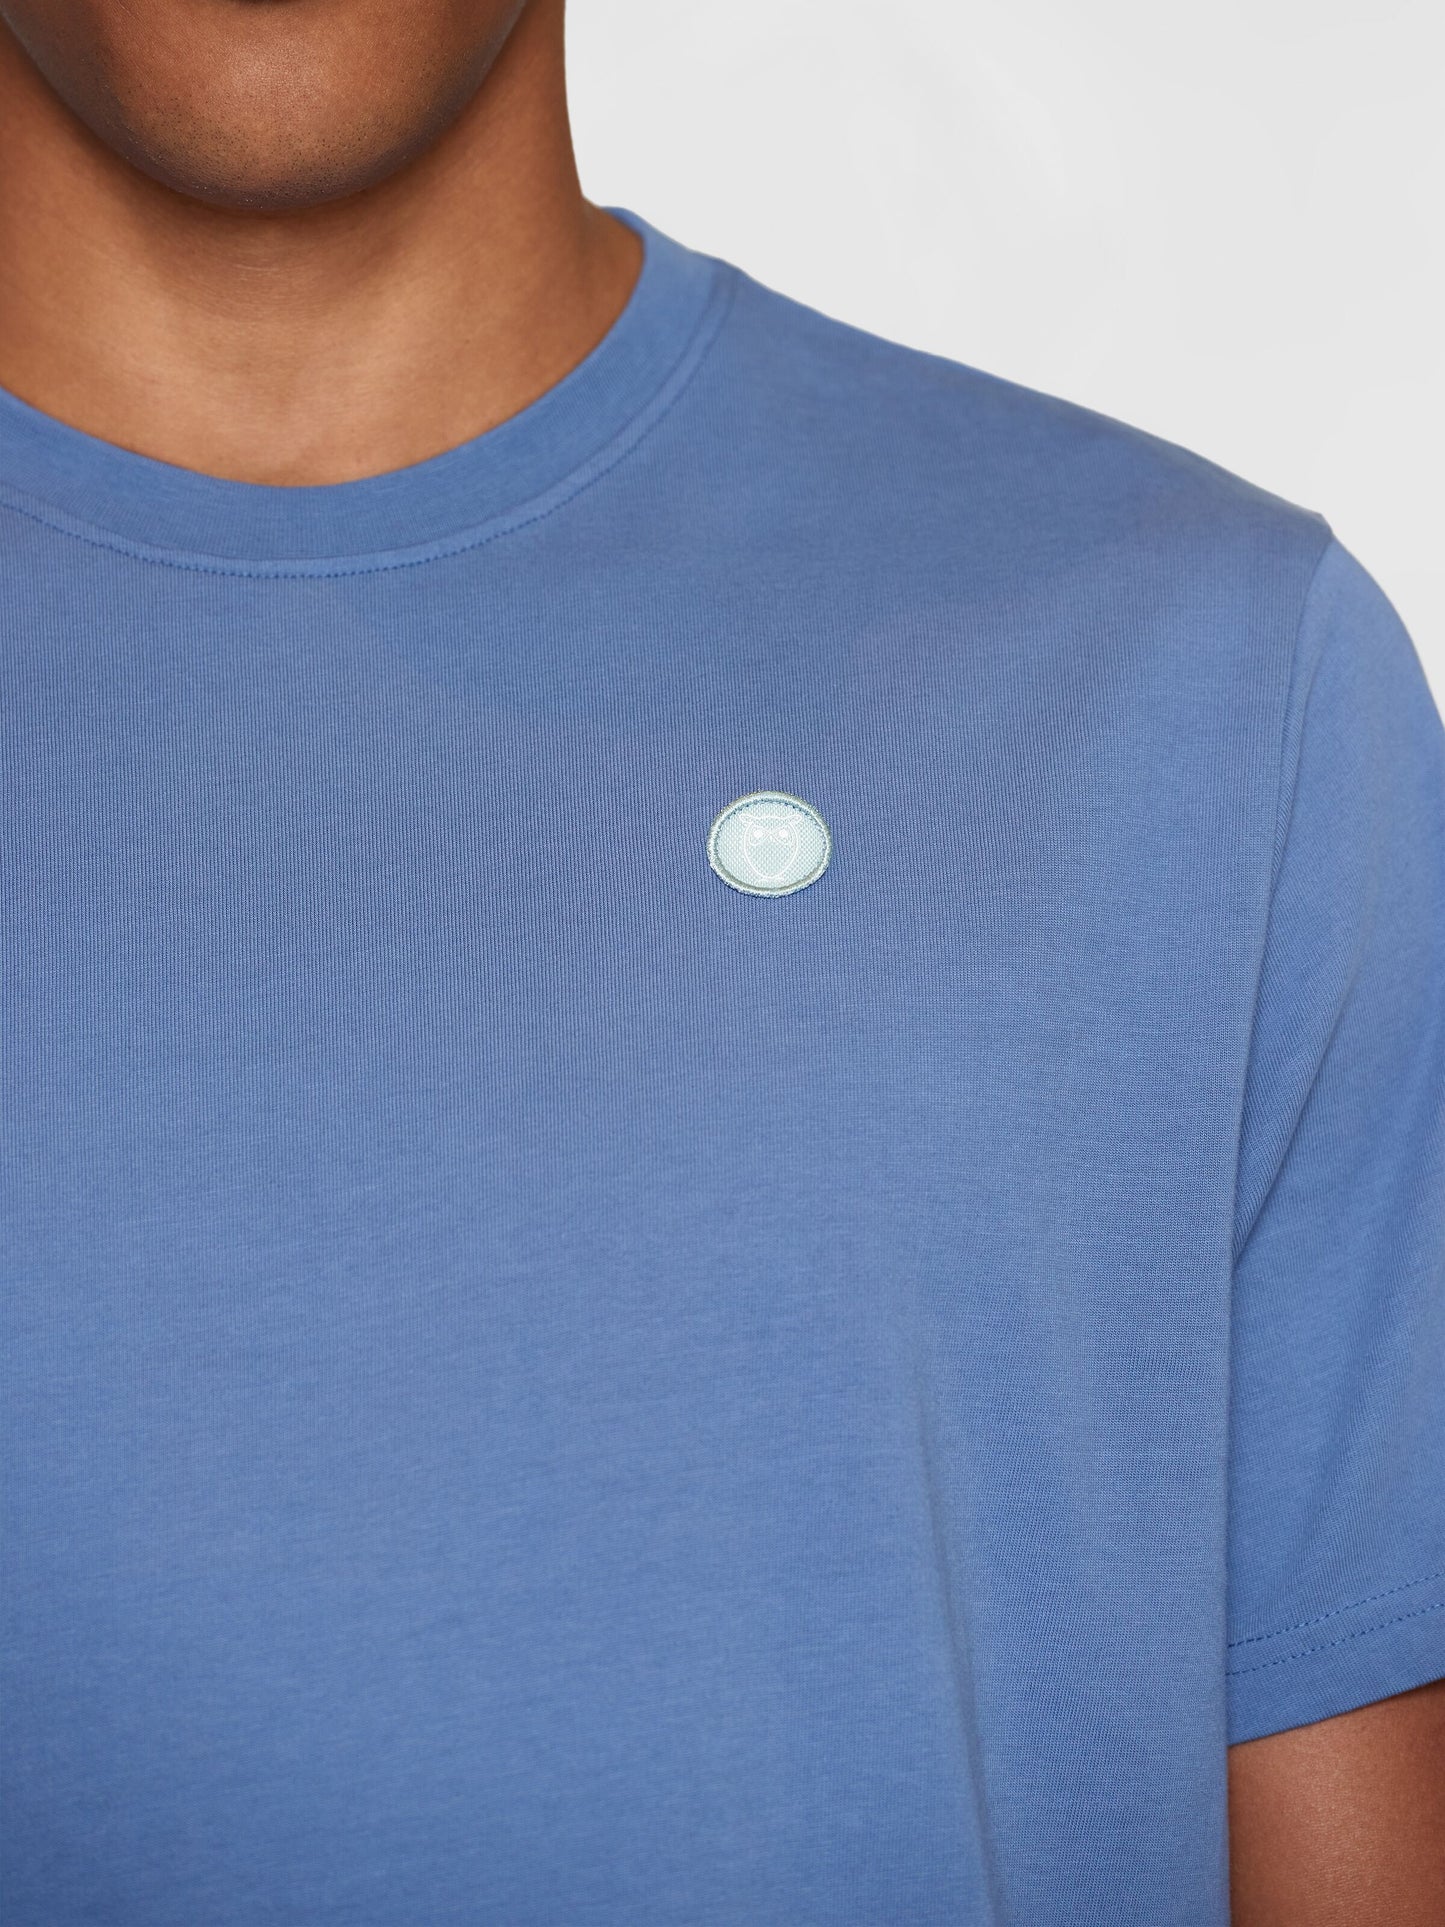 KCA - LOKE badge tee - Regenerative Organic Certified™ Moonlight Blue